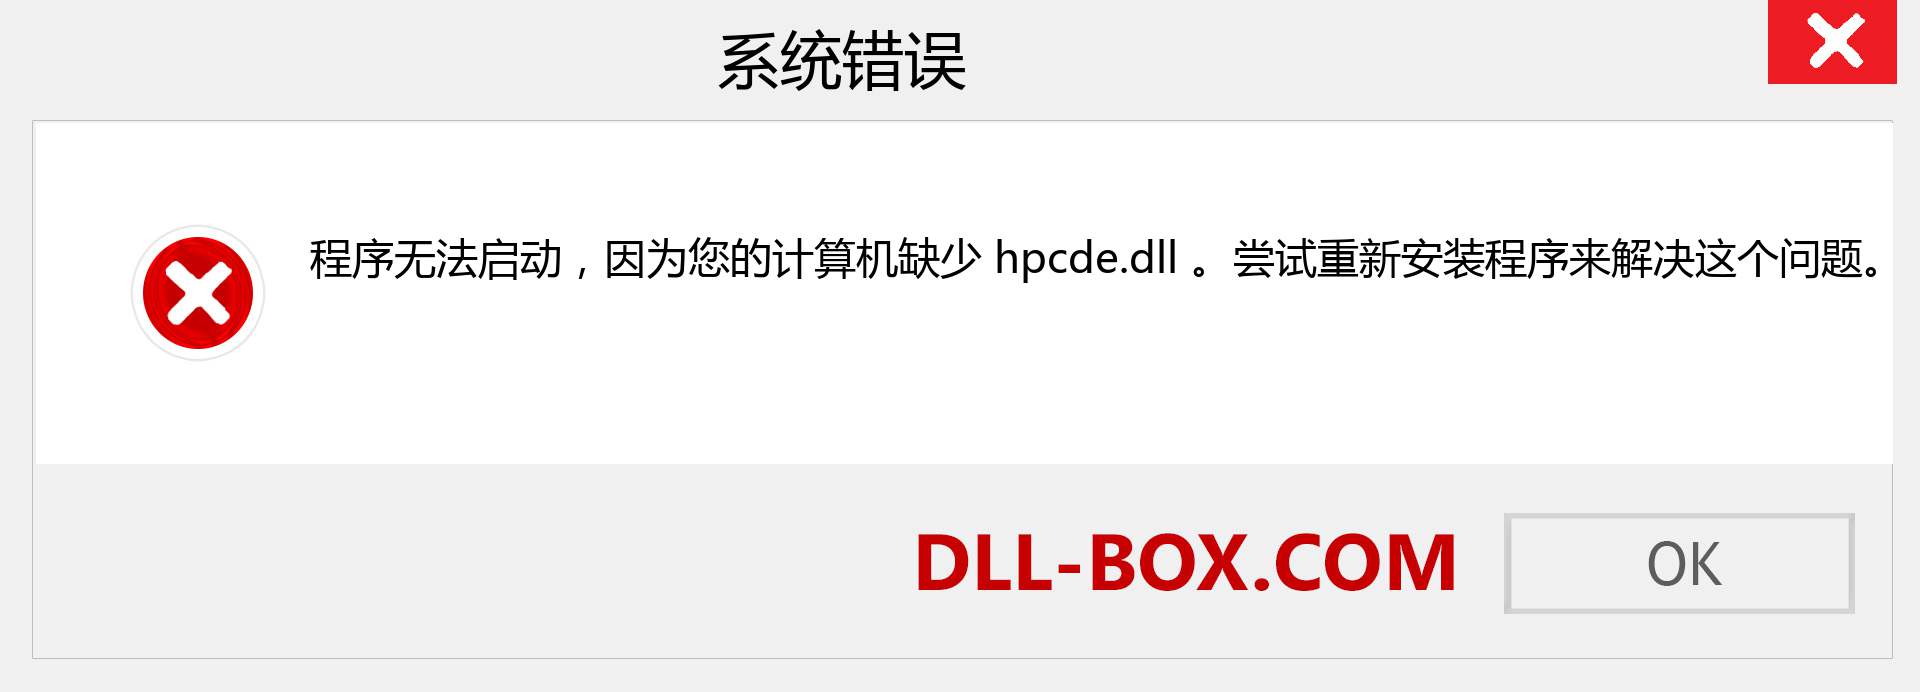 hpcde.dll 文件丢失？。 适用于 Windows 7、8、10 的下载 - 修复 Windows、照片、图像上的 hpcde dll 丢失错误